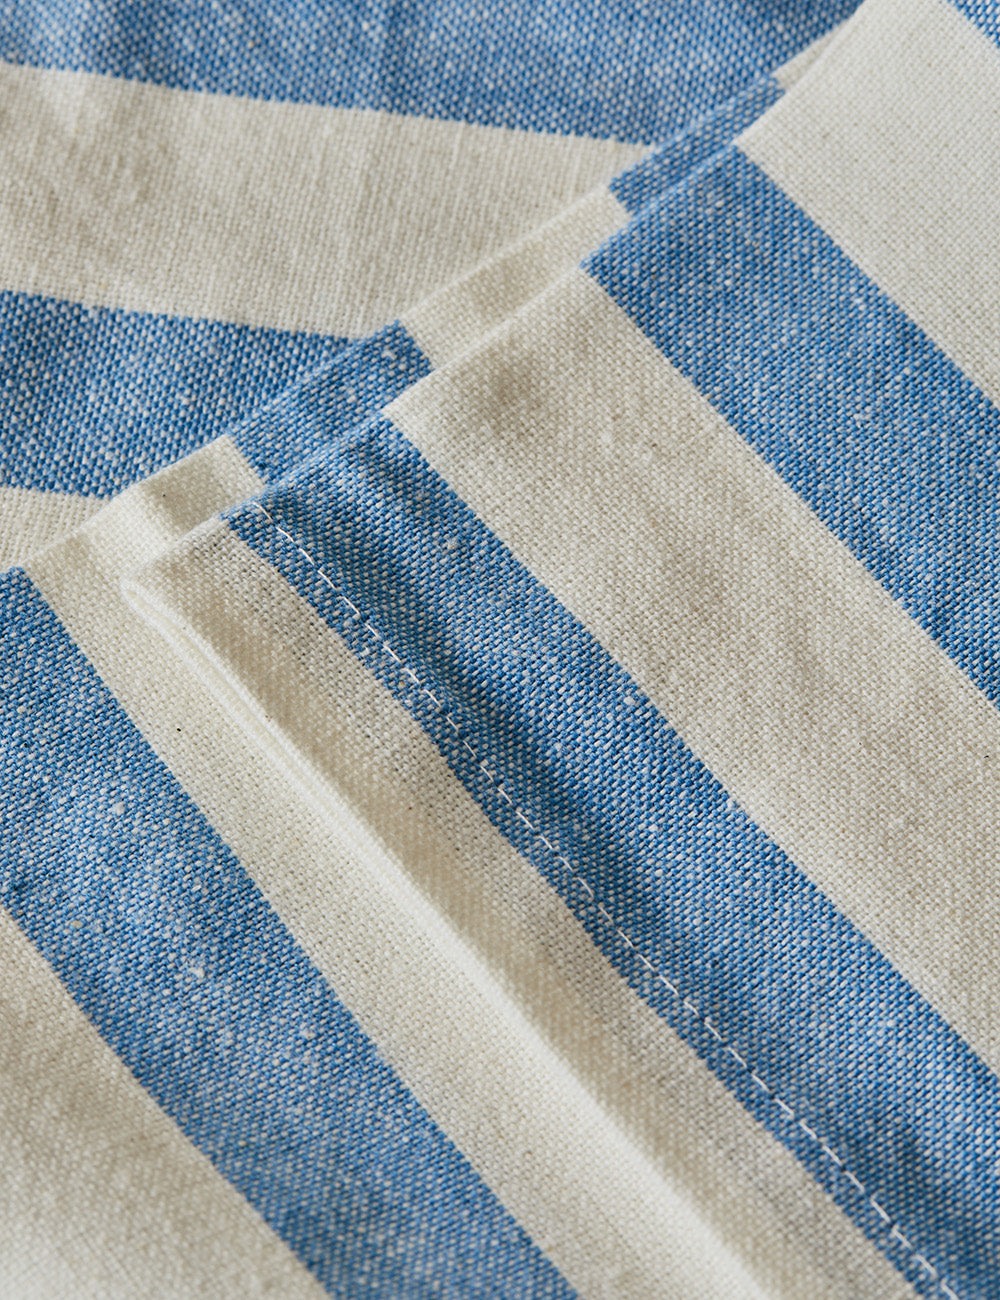 Blue Vintage Striped Napkins - Pack of 4